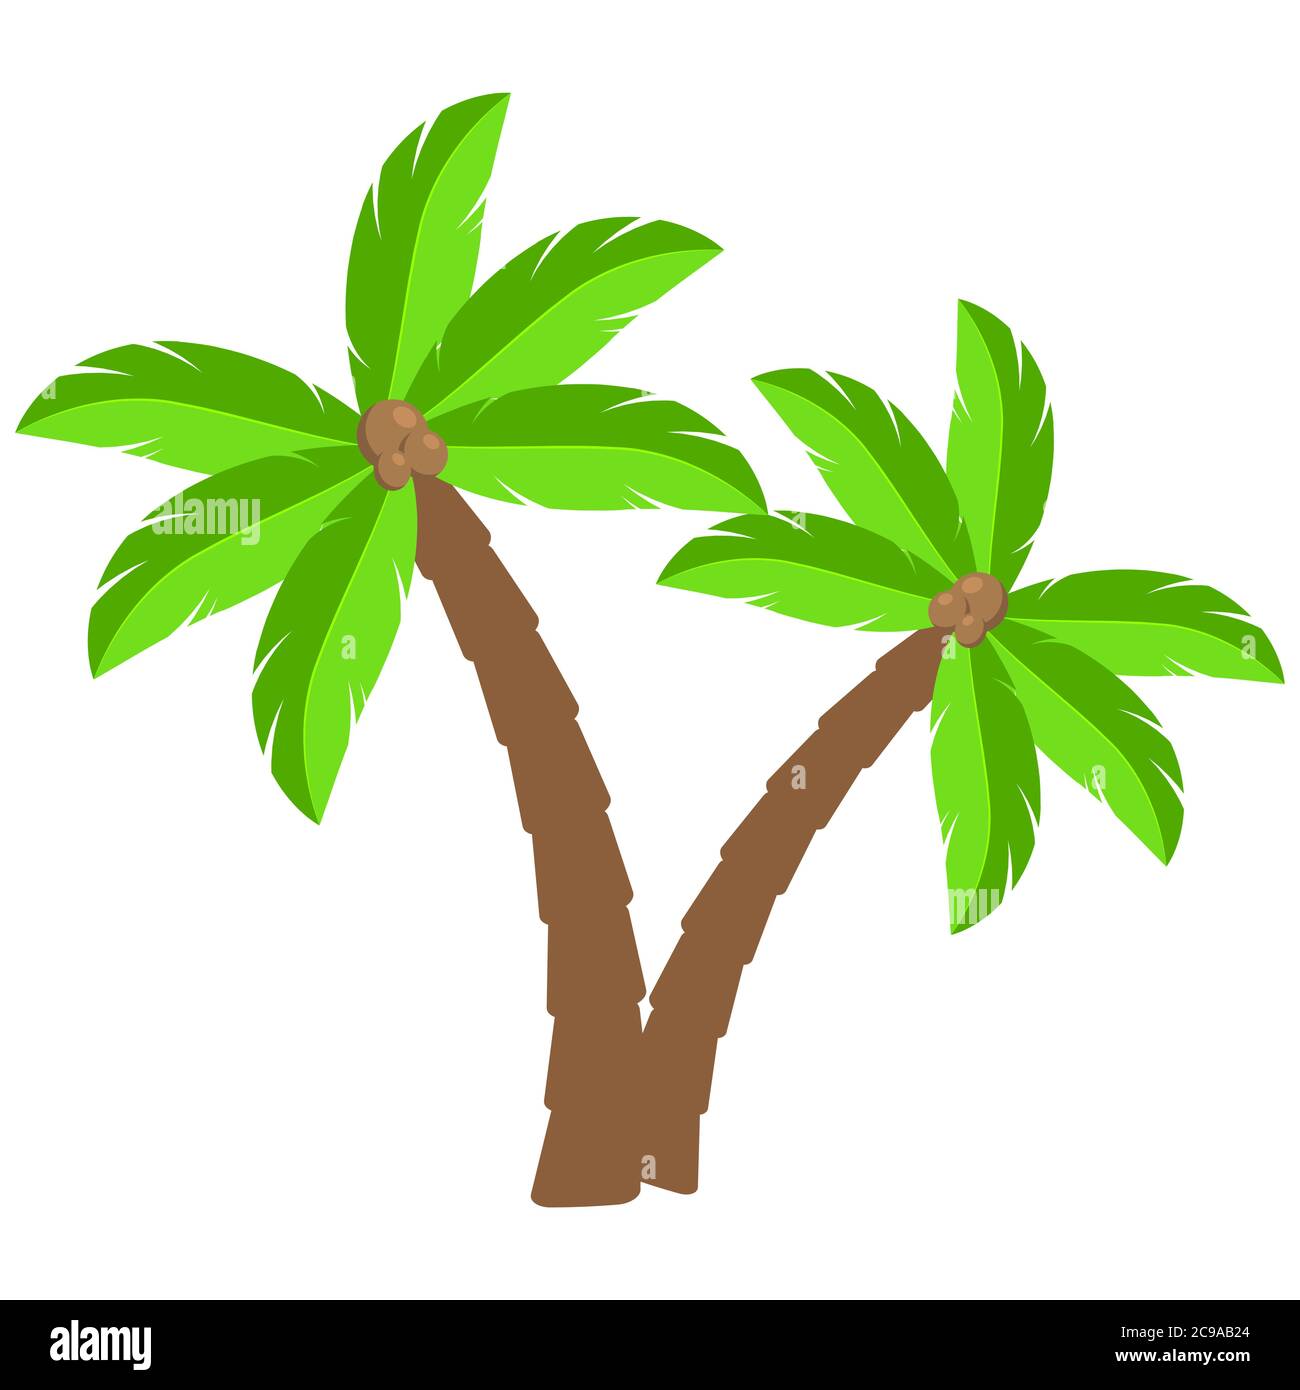 Tropische Palmen Cartoon Illustration.zwei gebogene Coco-Palmen isoliert auf weiß. Exotische Palmtree Illustration. Paradies Pflanzen Symbol Cliparts.Design Stock Vektor